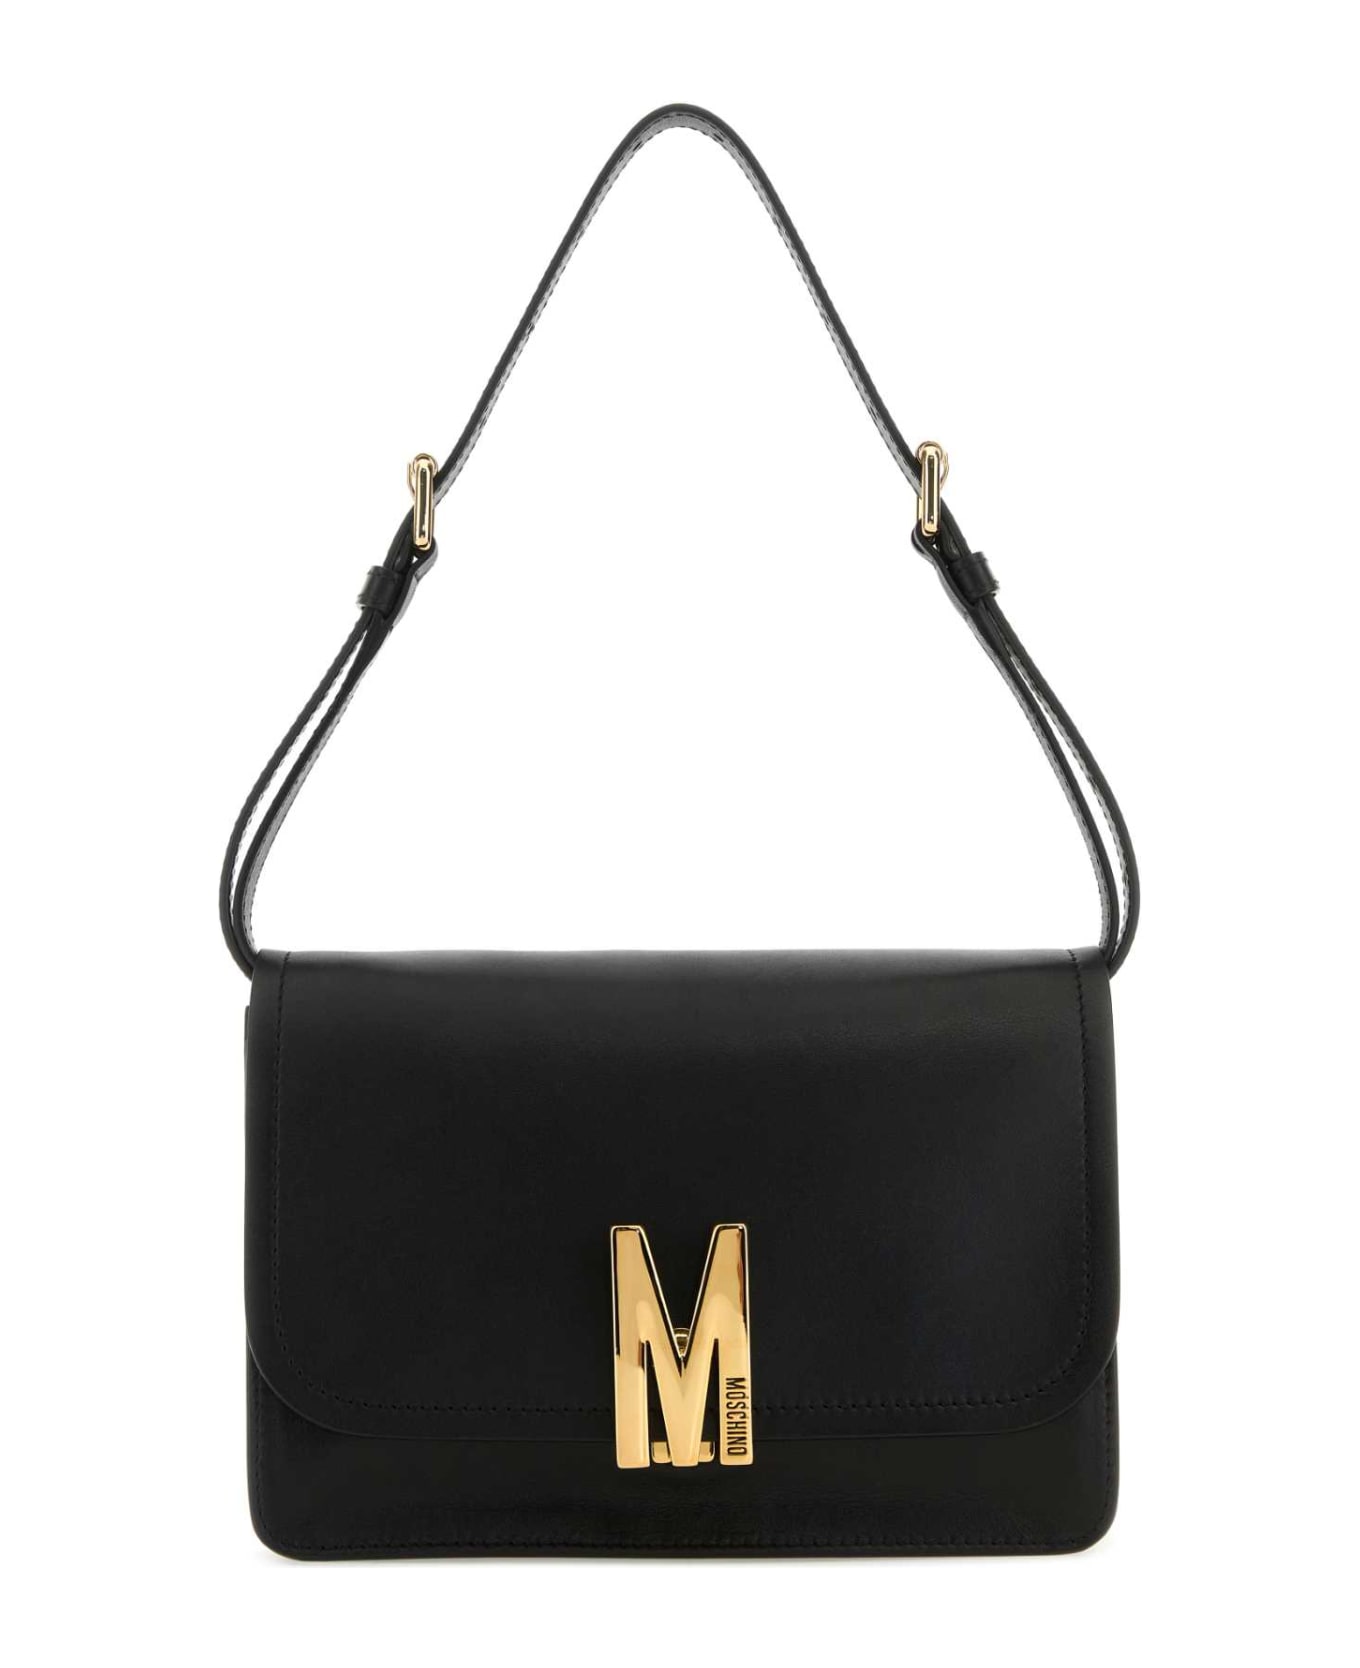 Moschino Black Leather M Bag Shoulder Bag - 0555